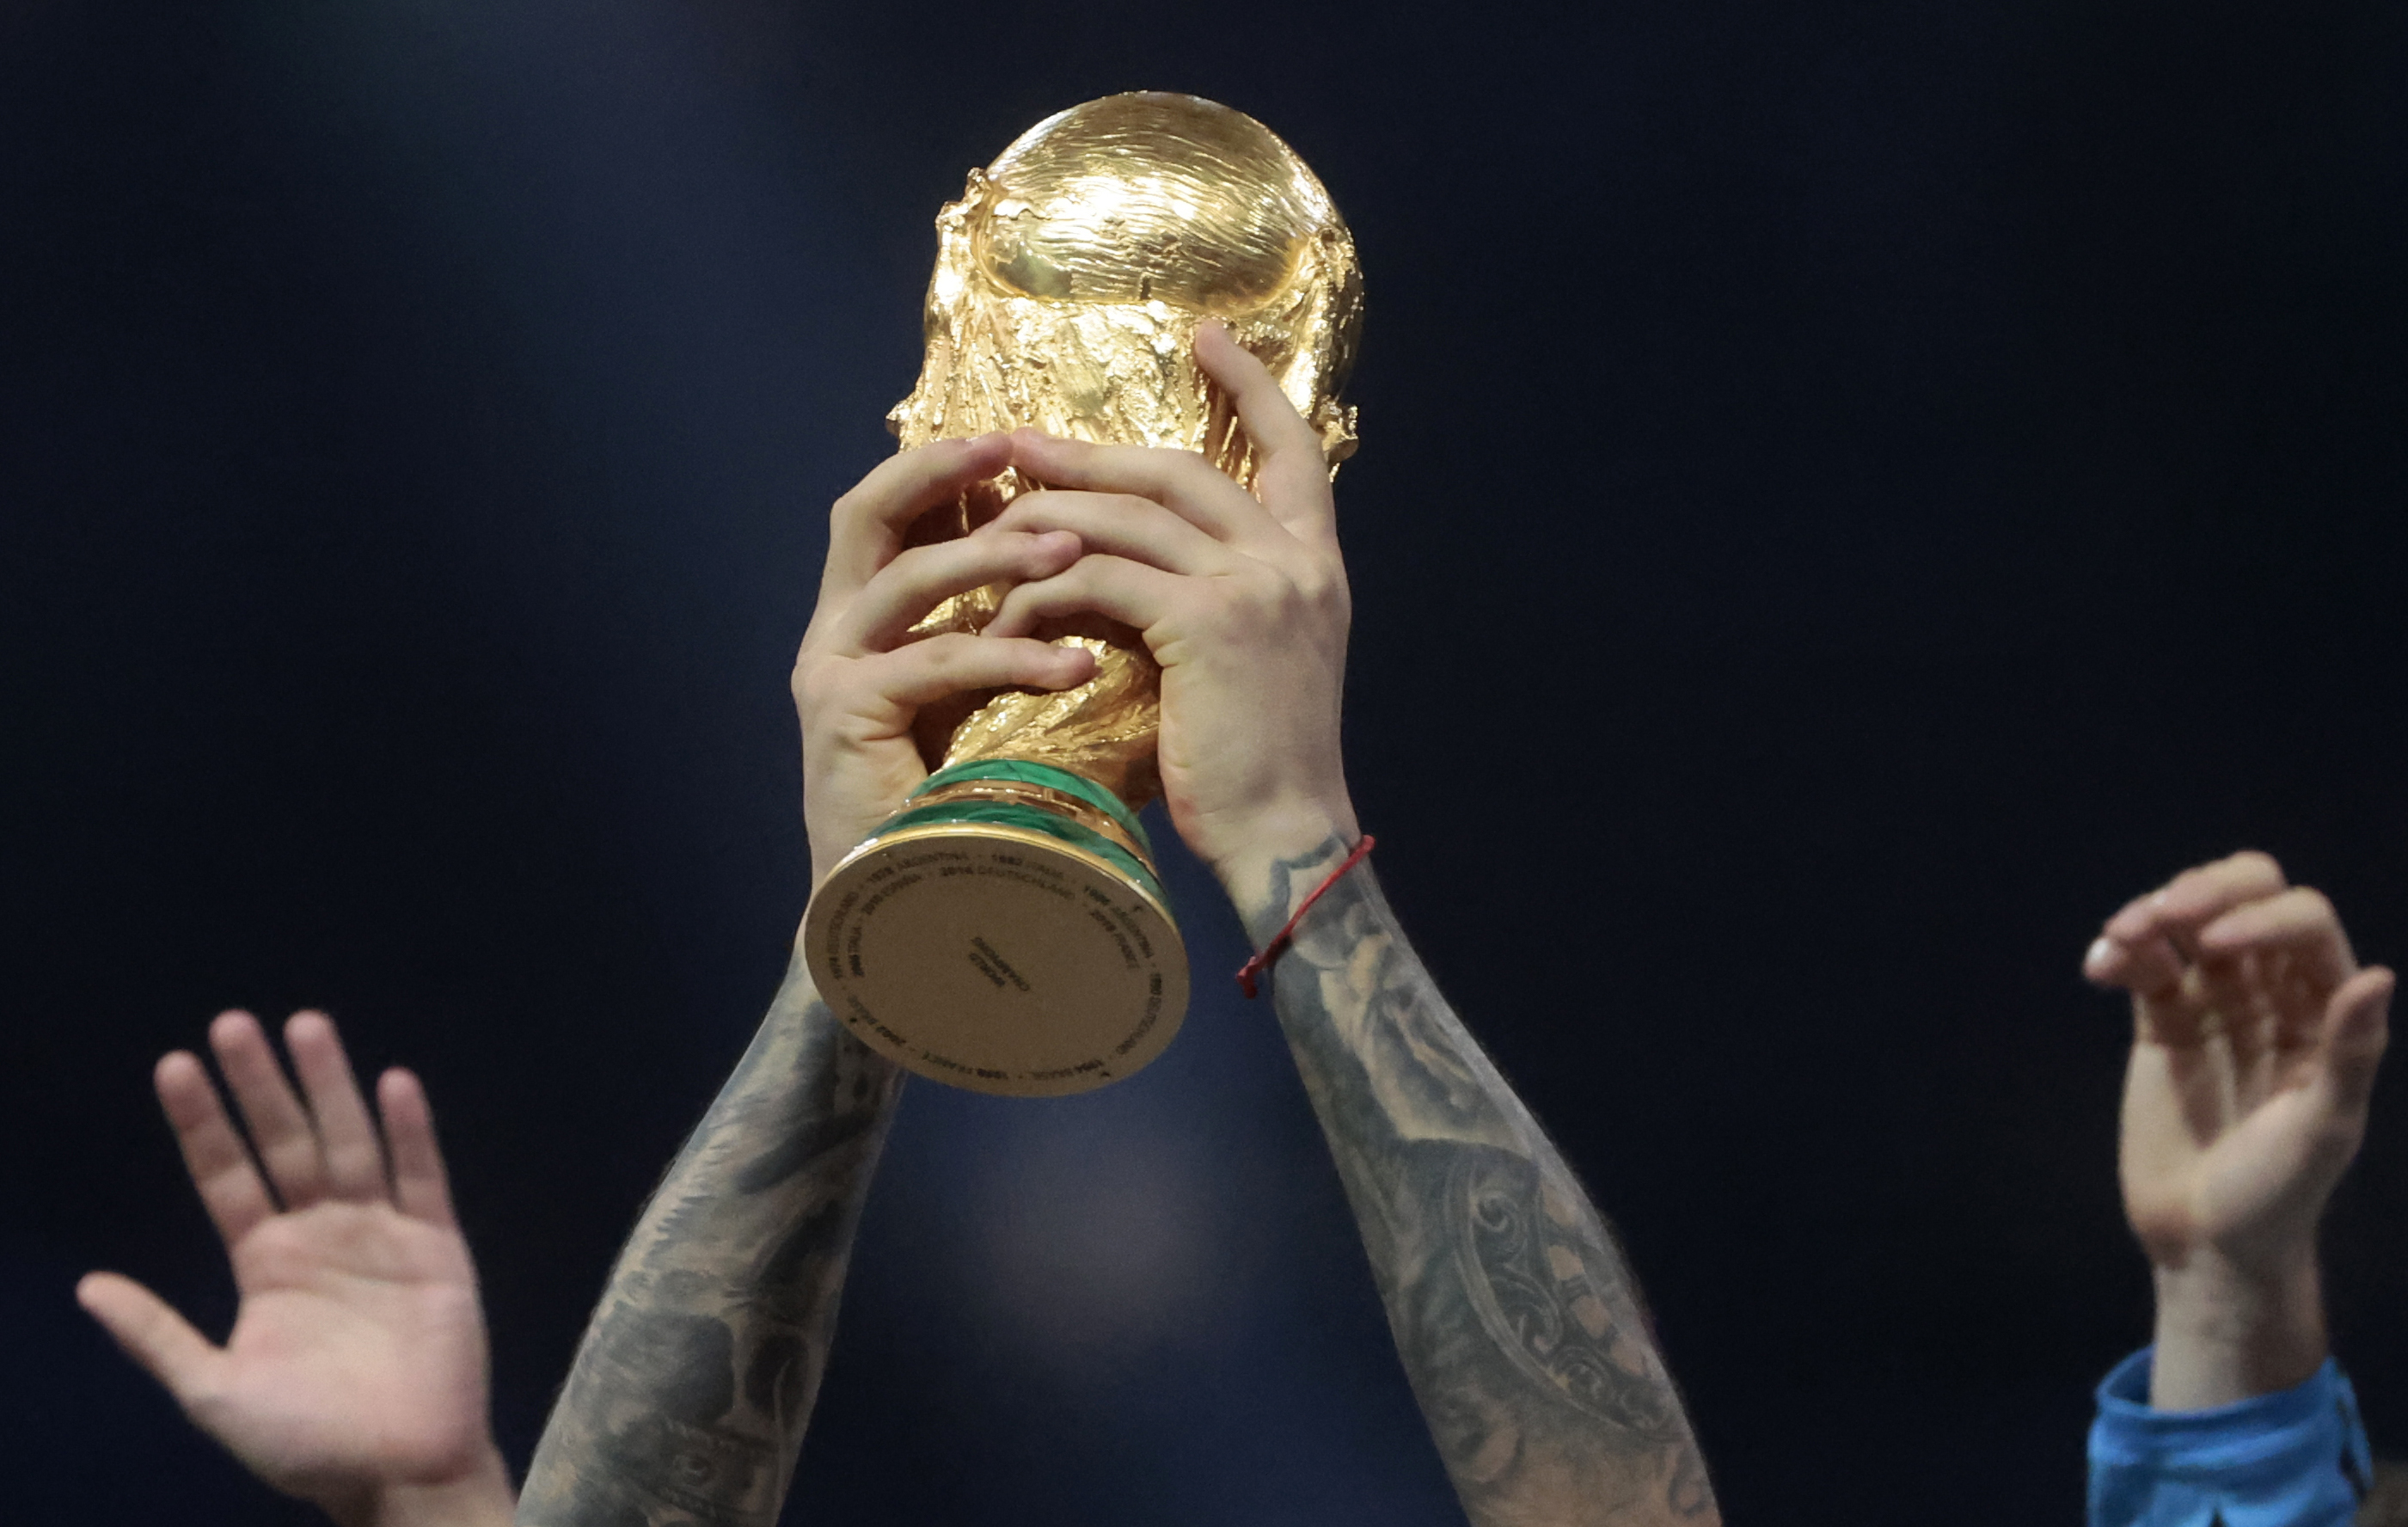 Por qué Argentina recibió una réplica de la Copa del Mundo y no el trofeo  original